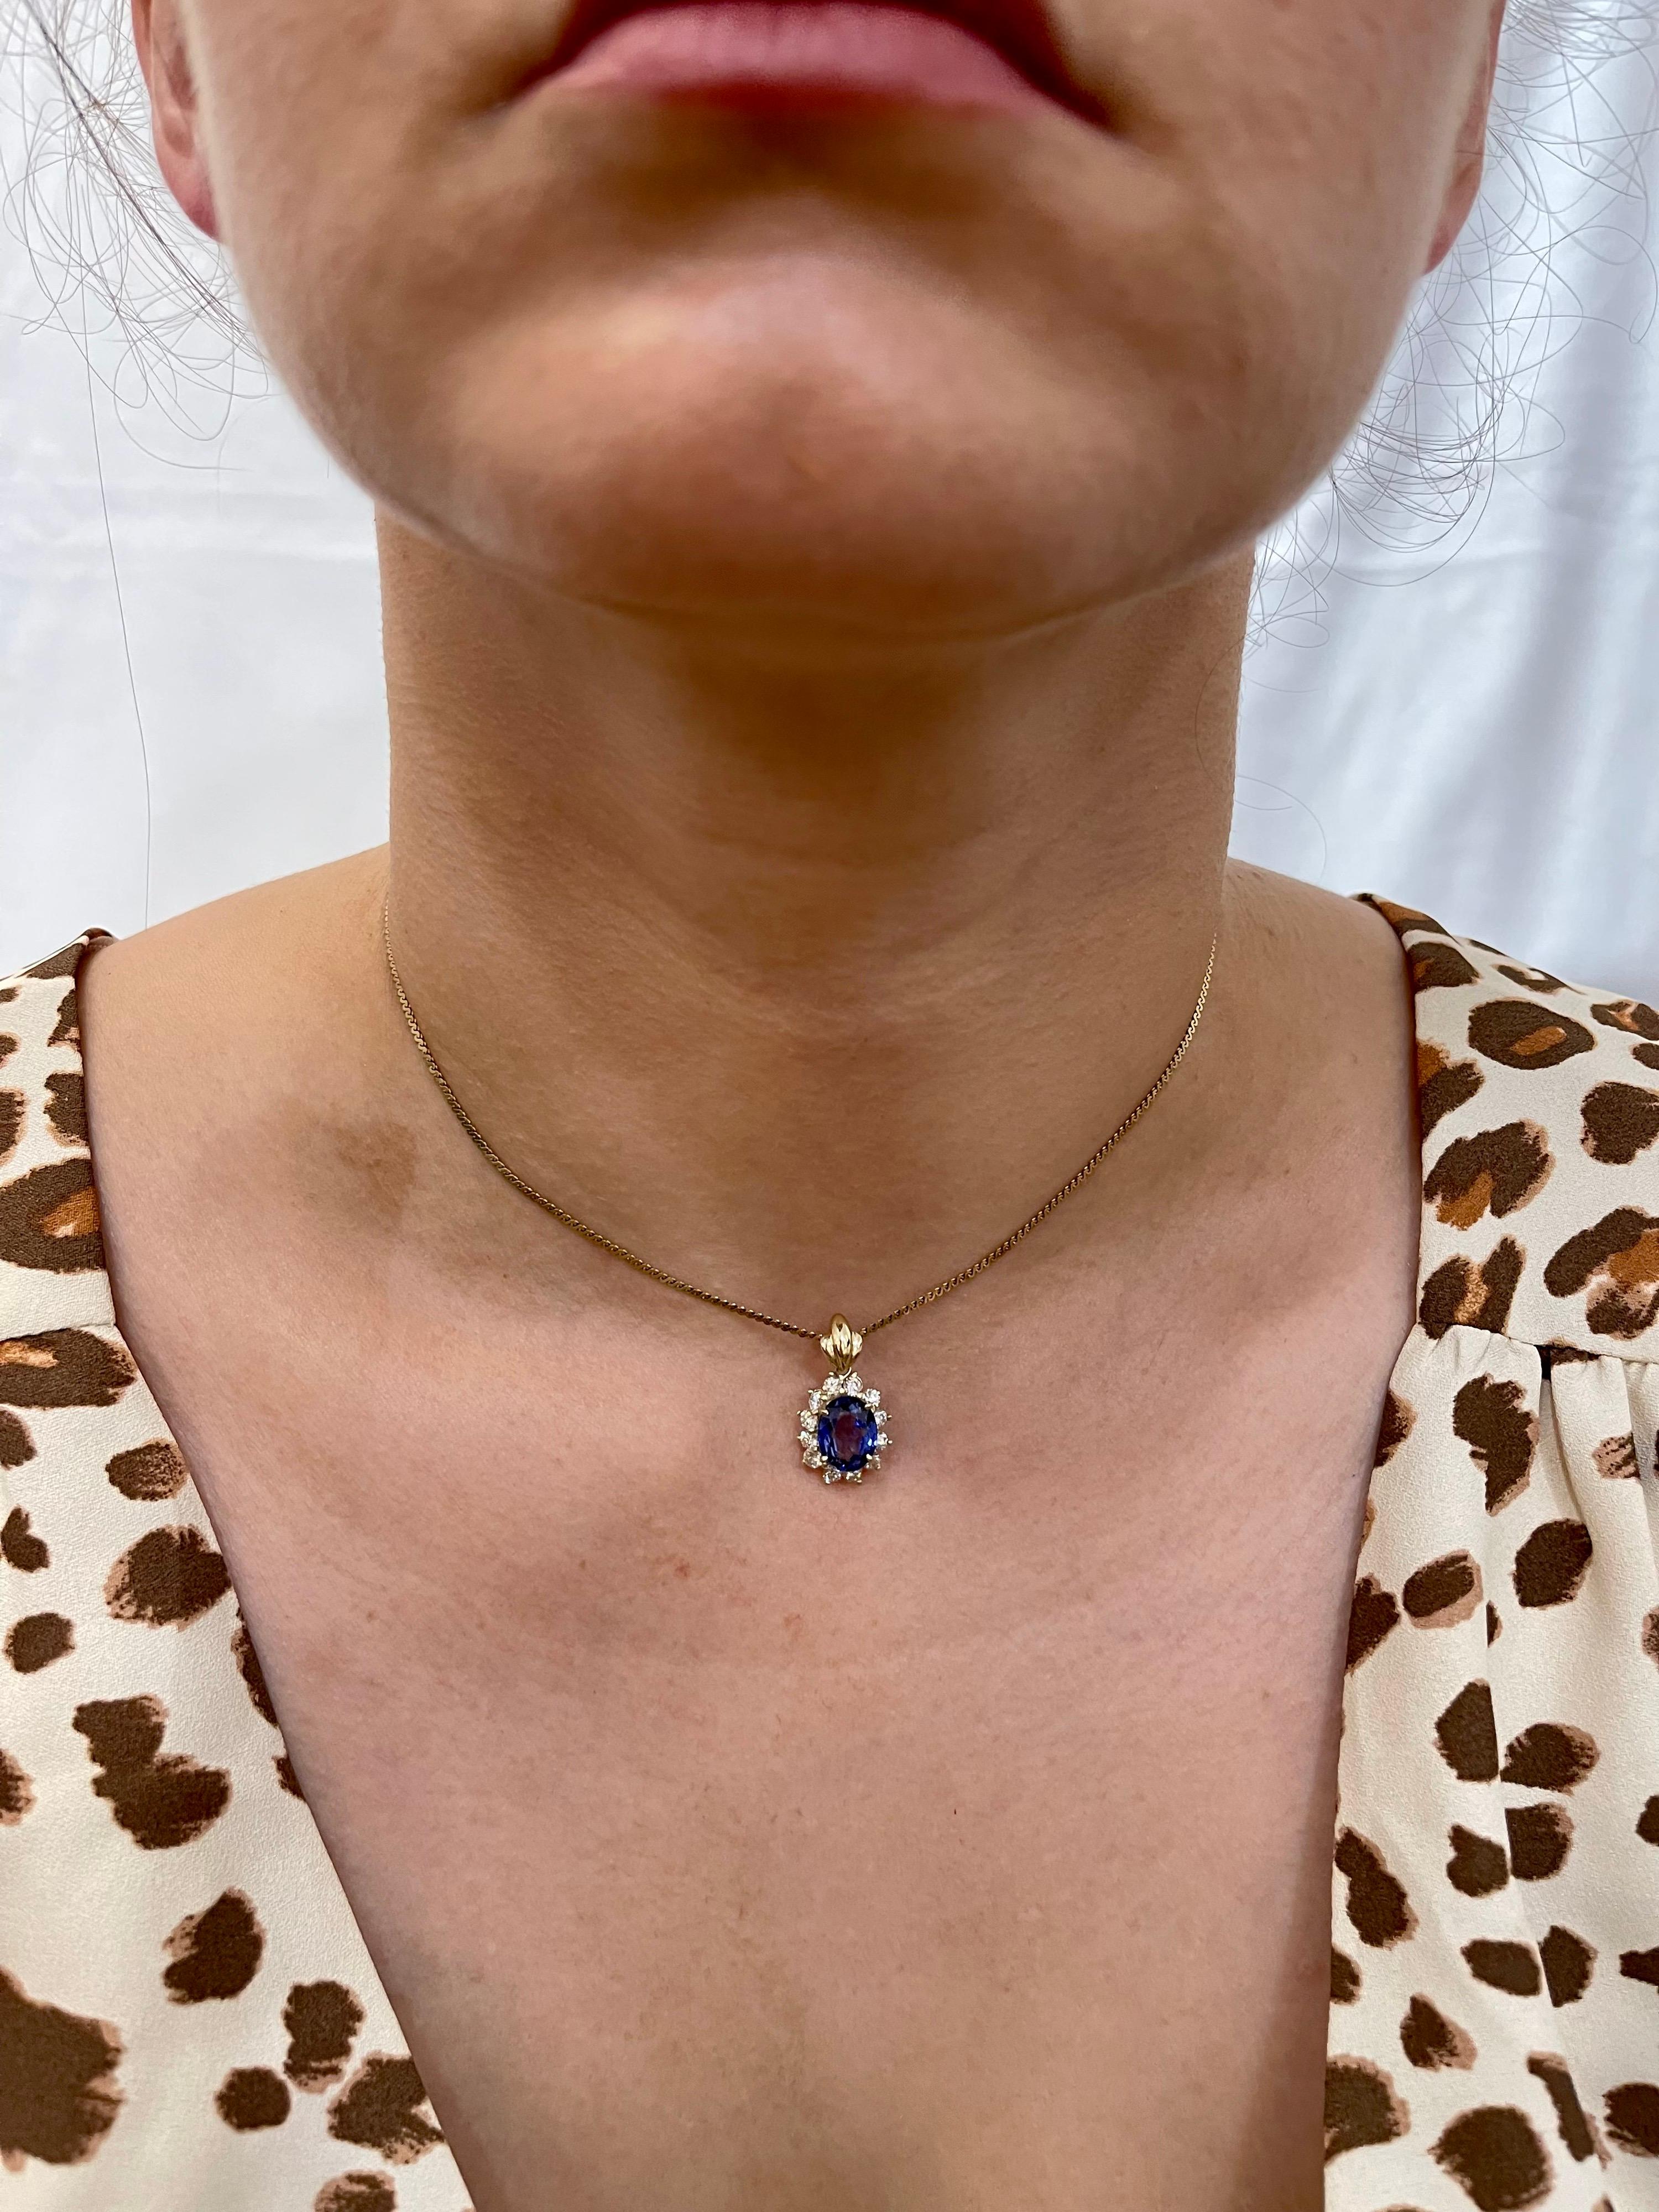 3 carat tanzanite necklace